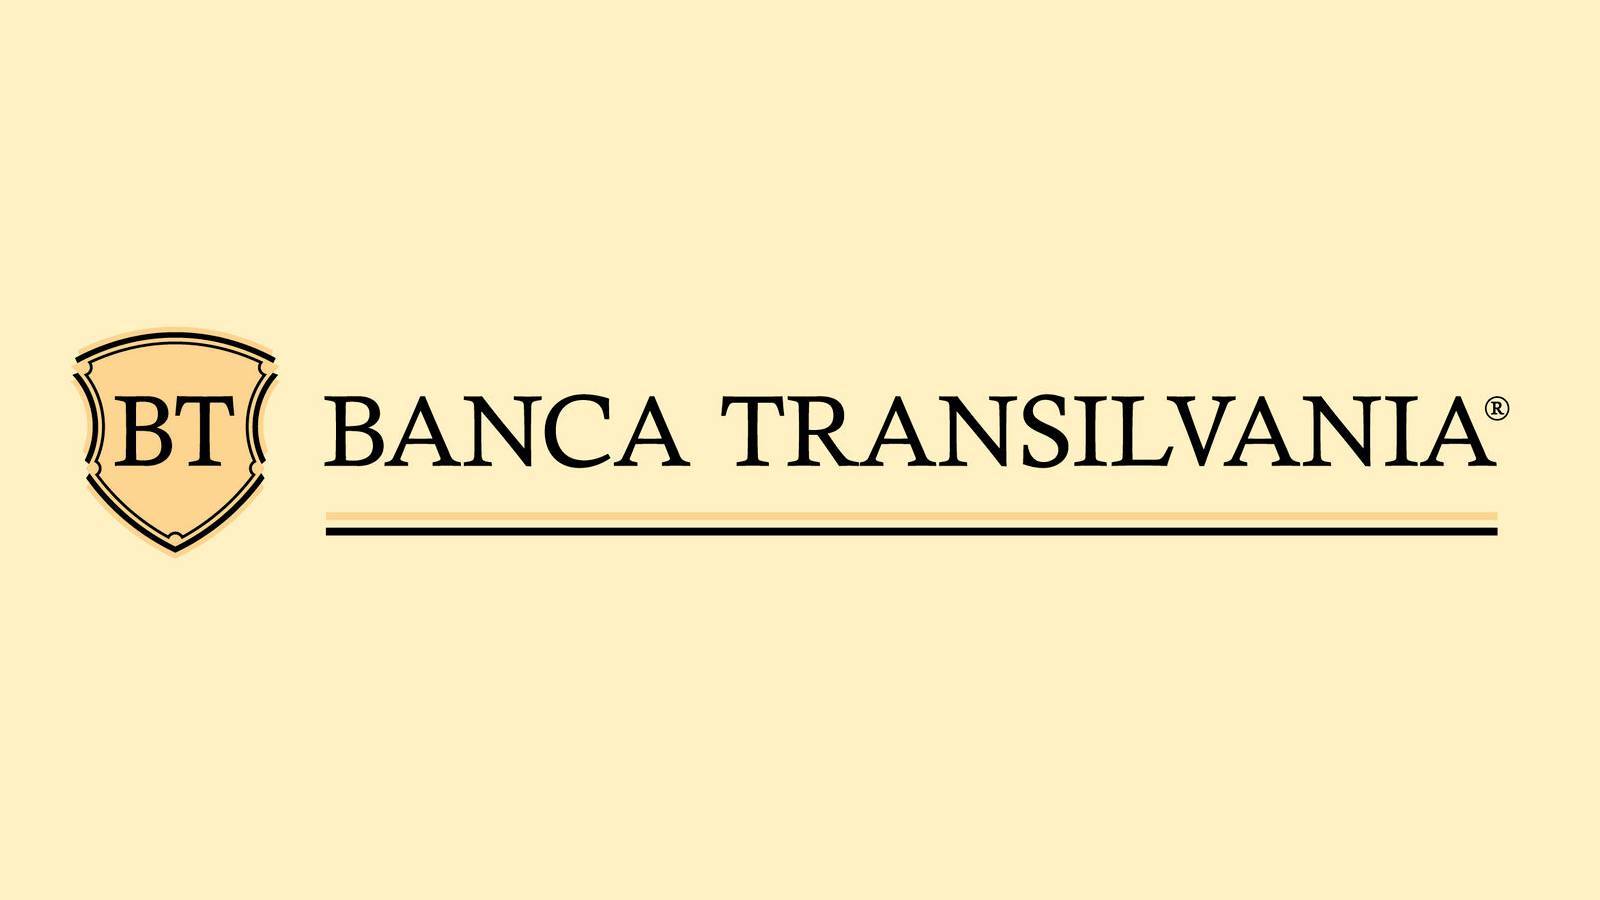 BANCA Transilvania Noua Notificare IMPORTANTA Transmisa Clientilor Romania